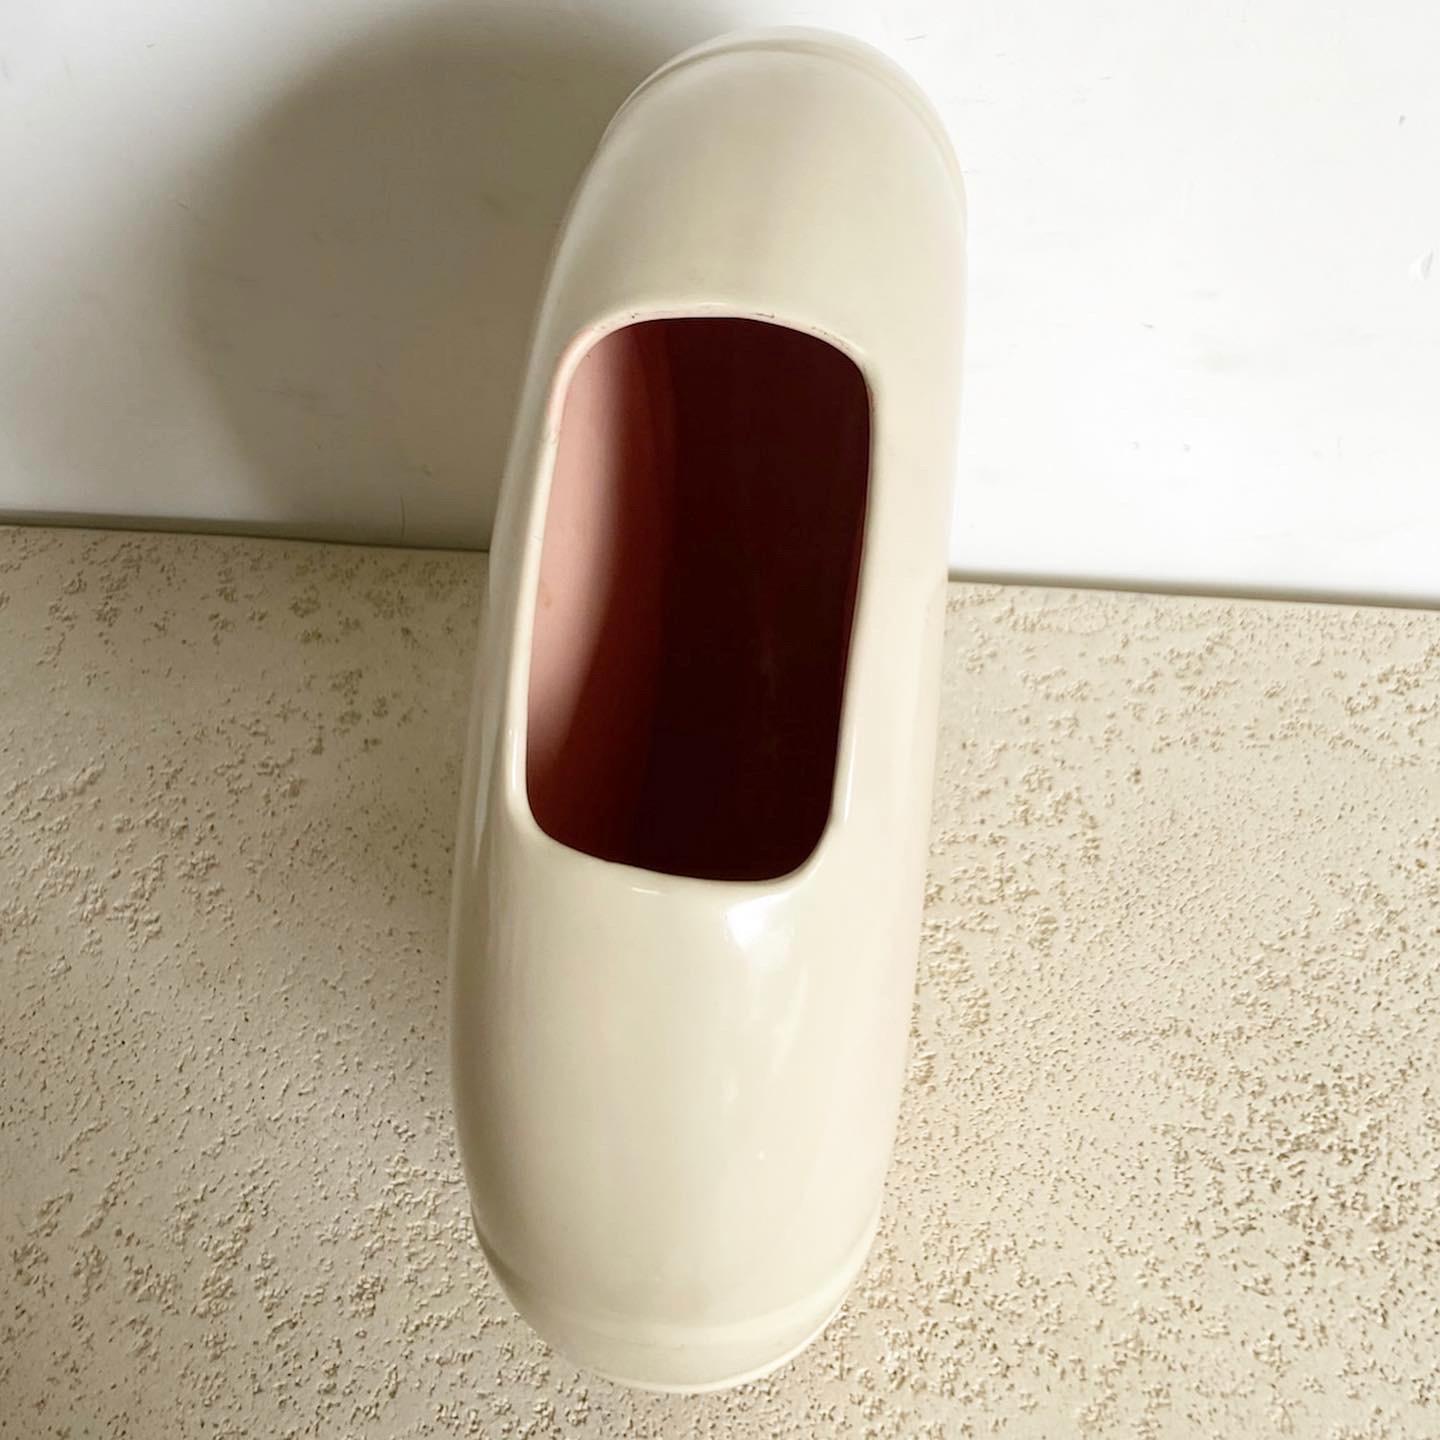 Voici le vase circulaire postmoderne de Haeger, une pièce élégante qui sert à la fois de vase fonctionnel et de sculpture autonome. Son design circulaire équilibré et sa teinte crème en font un complément polyvalent à tout style d'intérieur, du